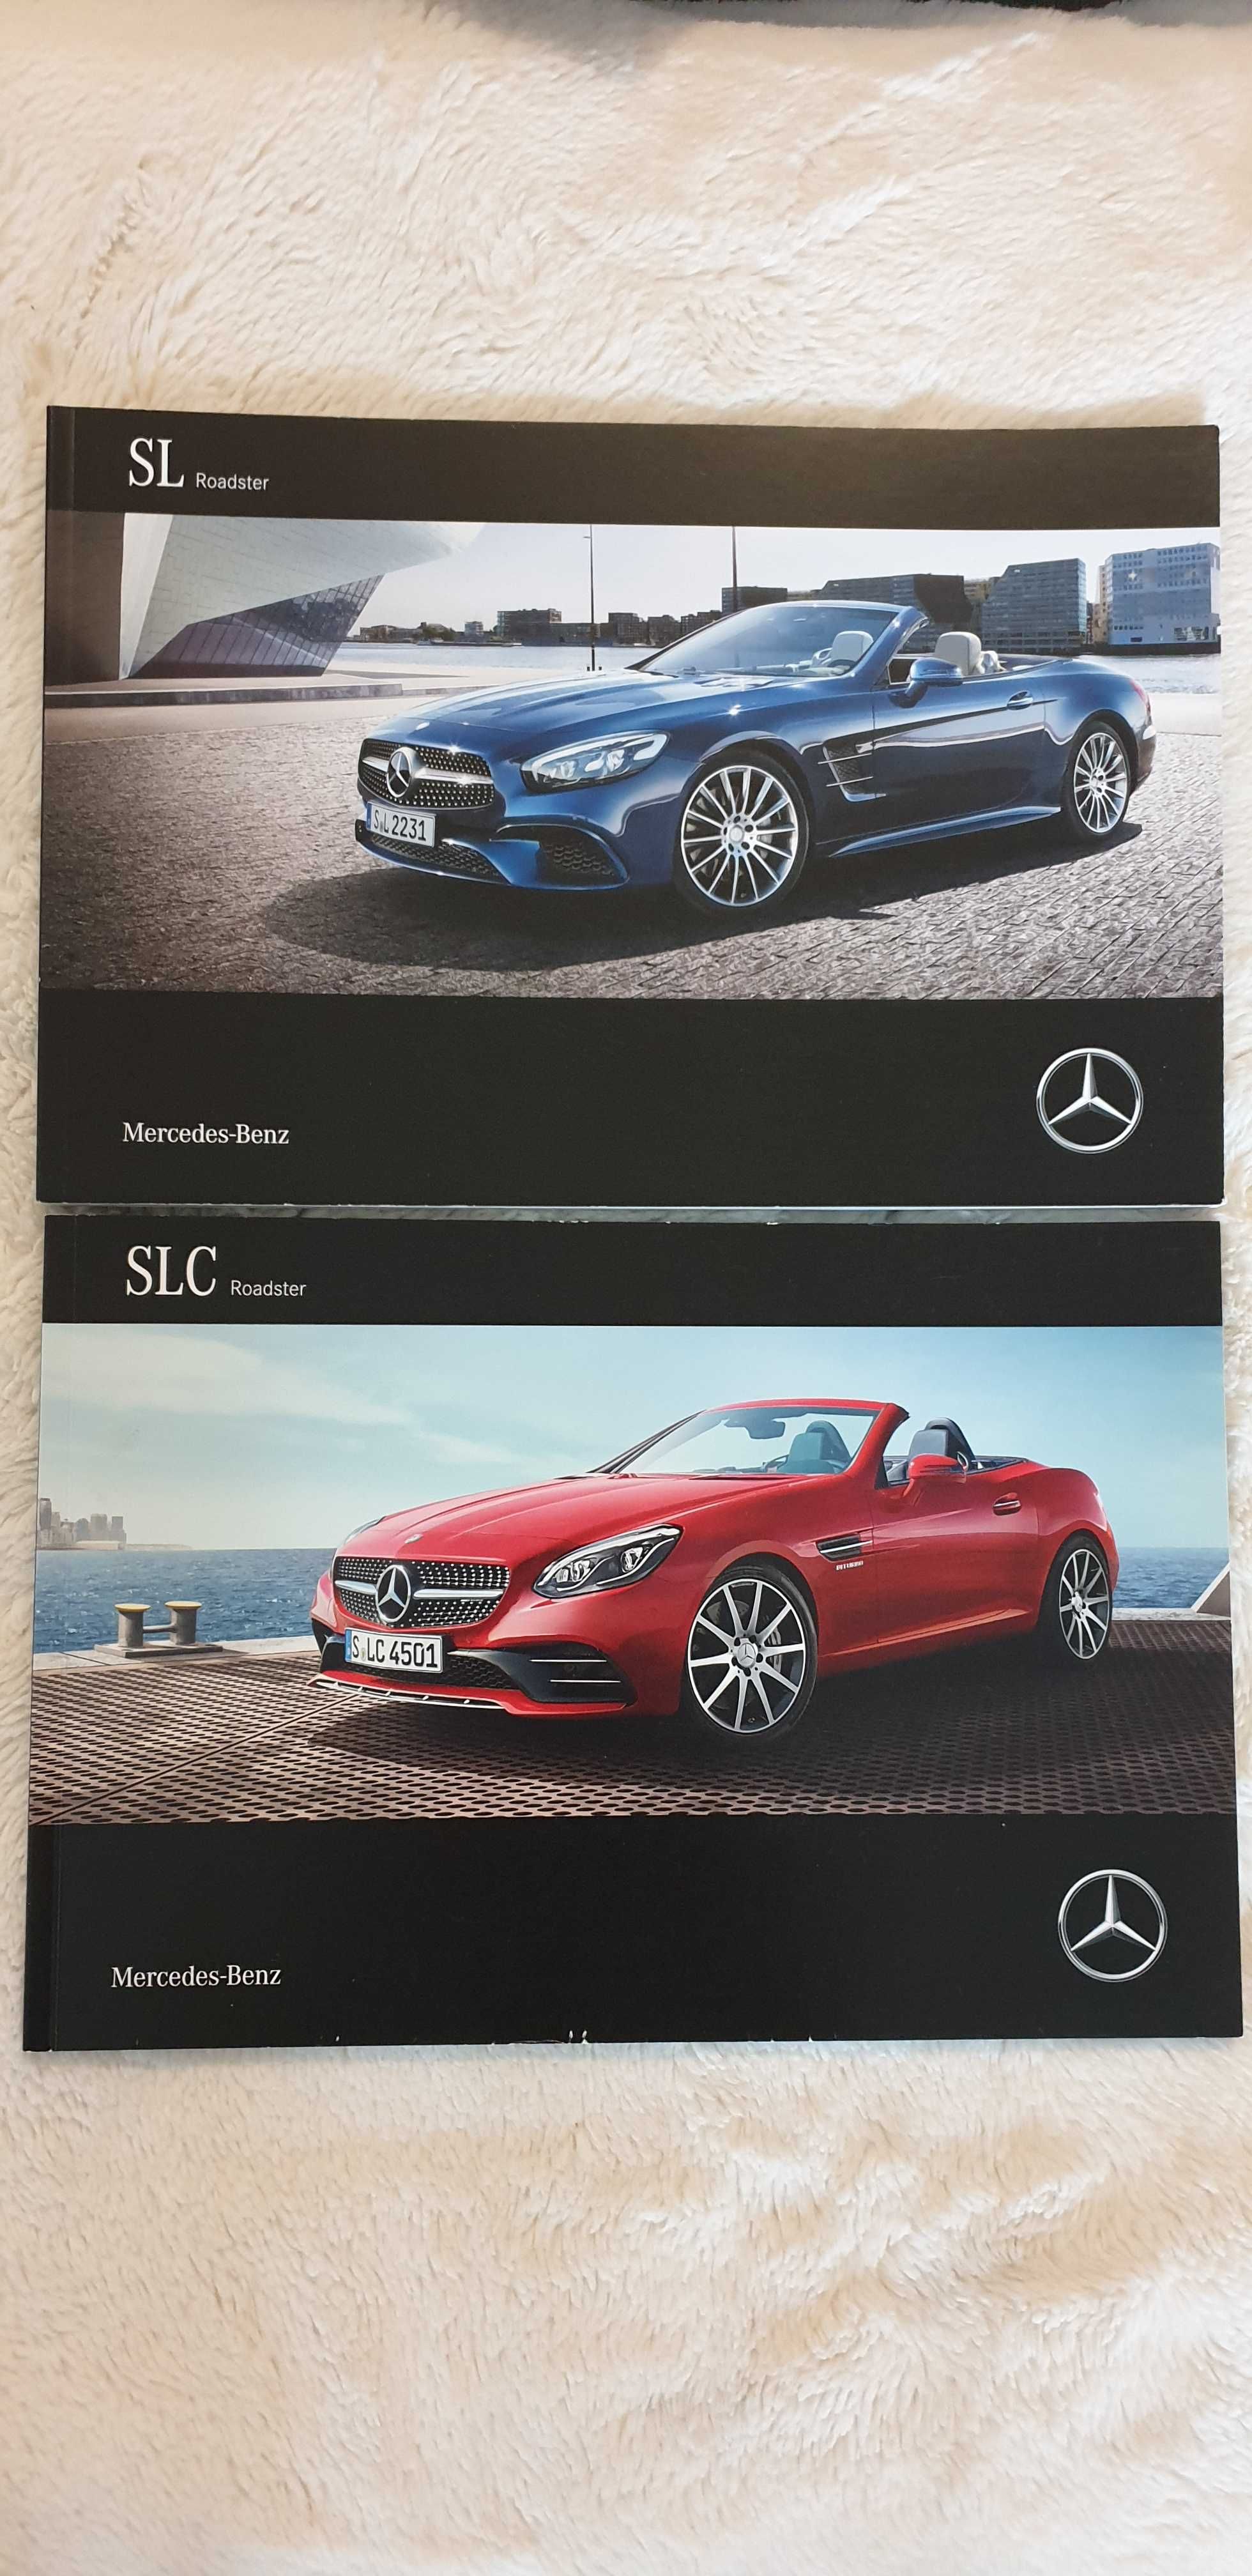 Prospekt Mercedes SL na innej SLC, BMW serii 7, BMW serii 8.